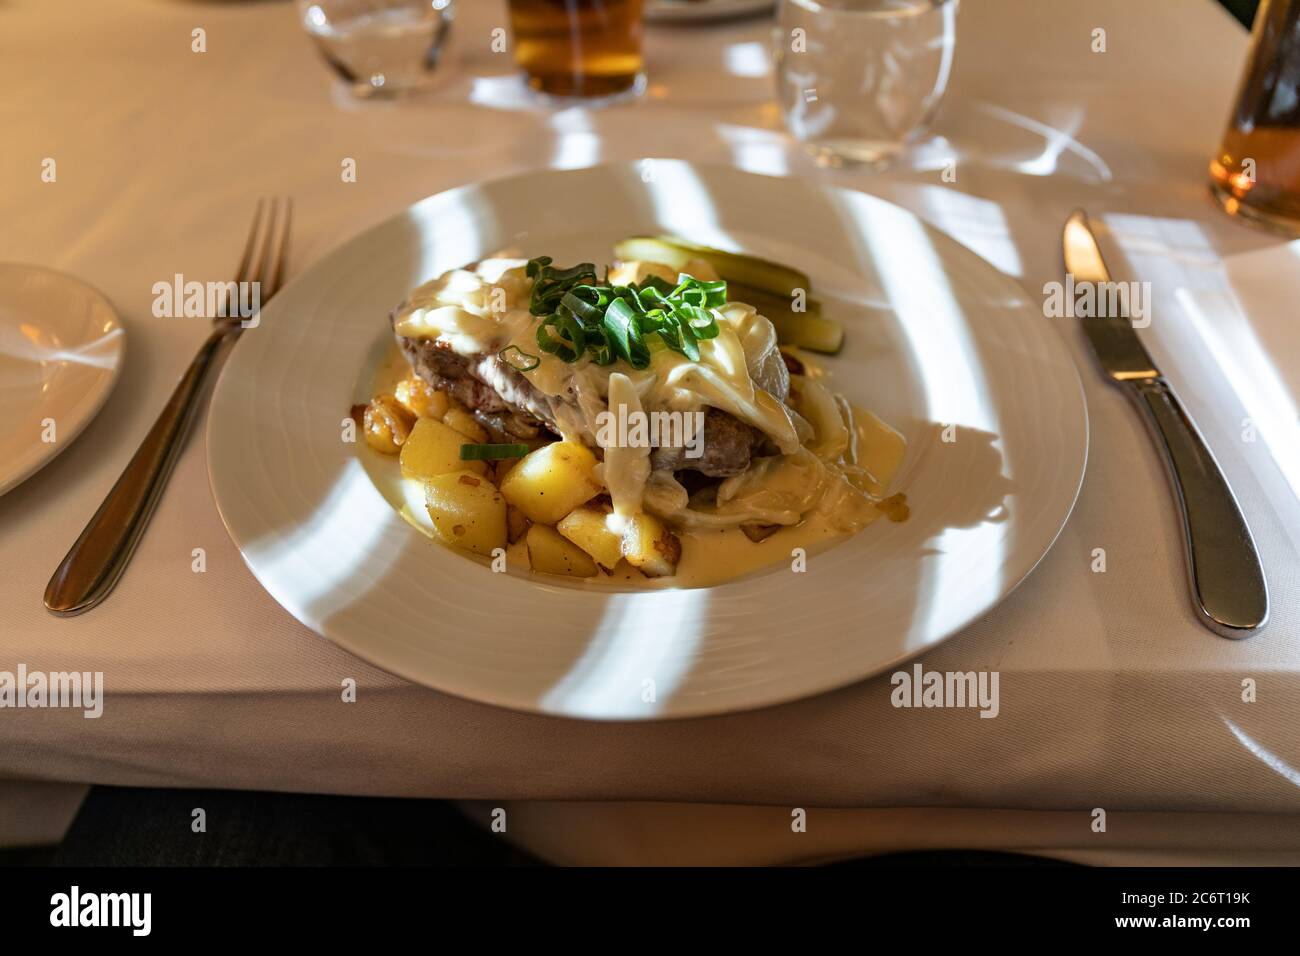 Lendensteak mit gerösteten Zwiebeln und gebratenen Kartoffeln, nach dem Schauspieler Tauno Palo benannte Portion, im Restaurant Elite in Helsinki, Finnland Stockfoto